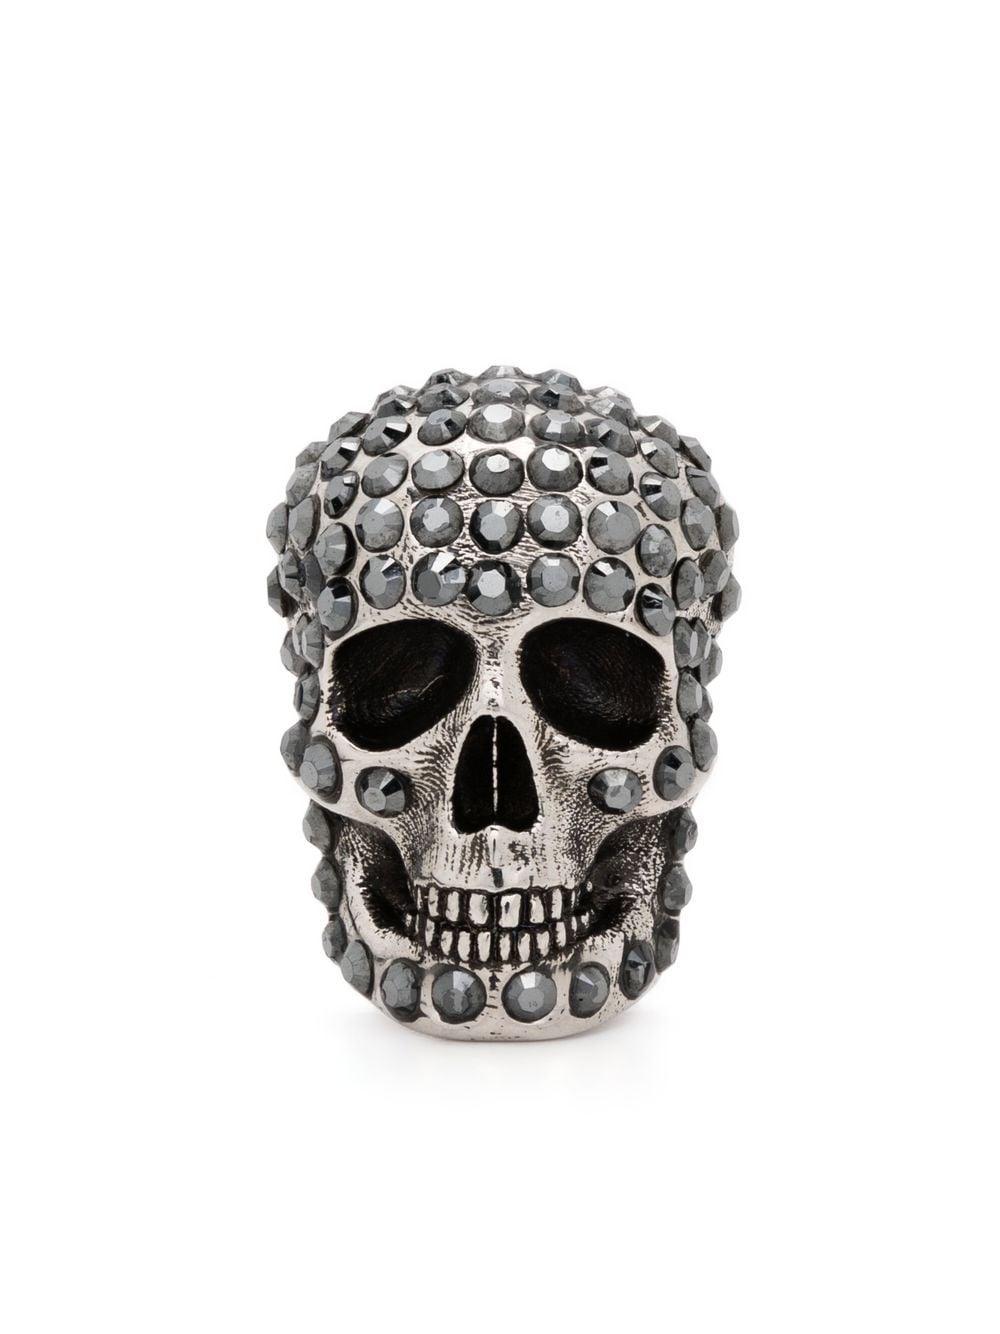 Skull crystal-embellished pin brooch